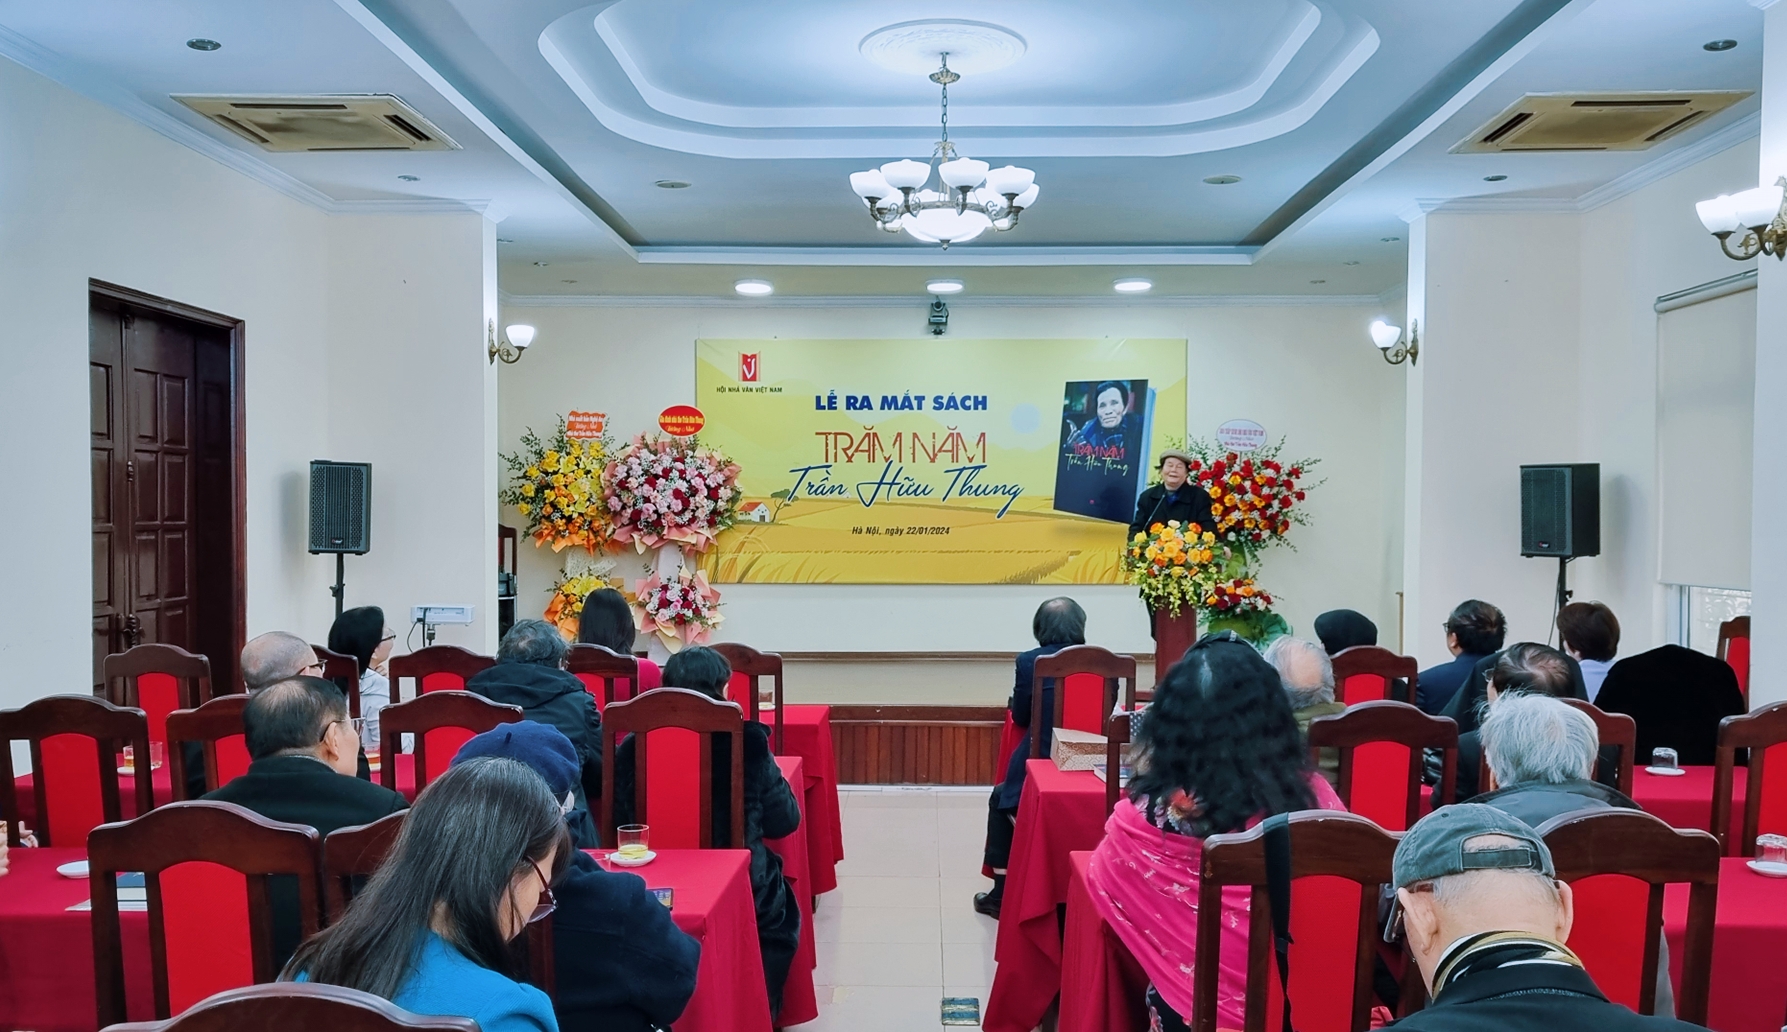 “Trăm năm Trần Hữu Thung”: Tôn vinh nhà văn hóa lừng danh của xứ Nghệ - 1